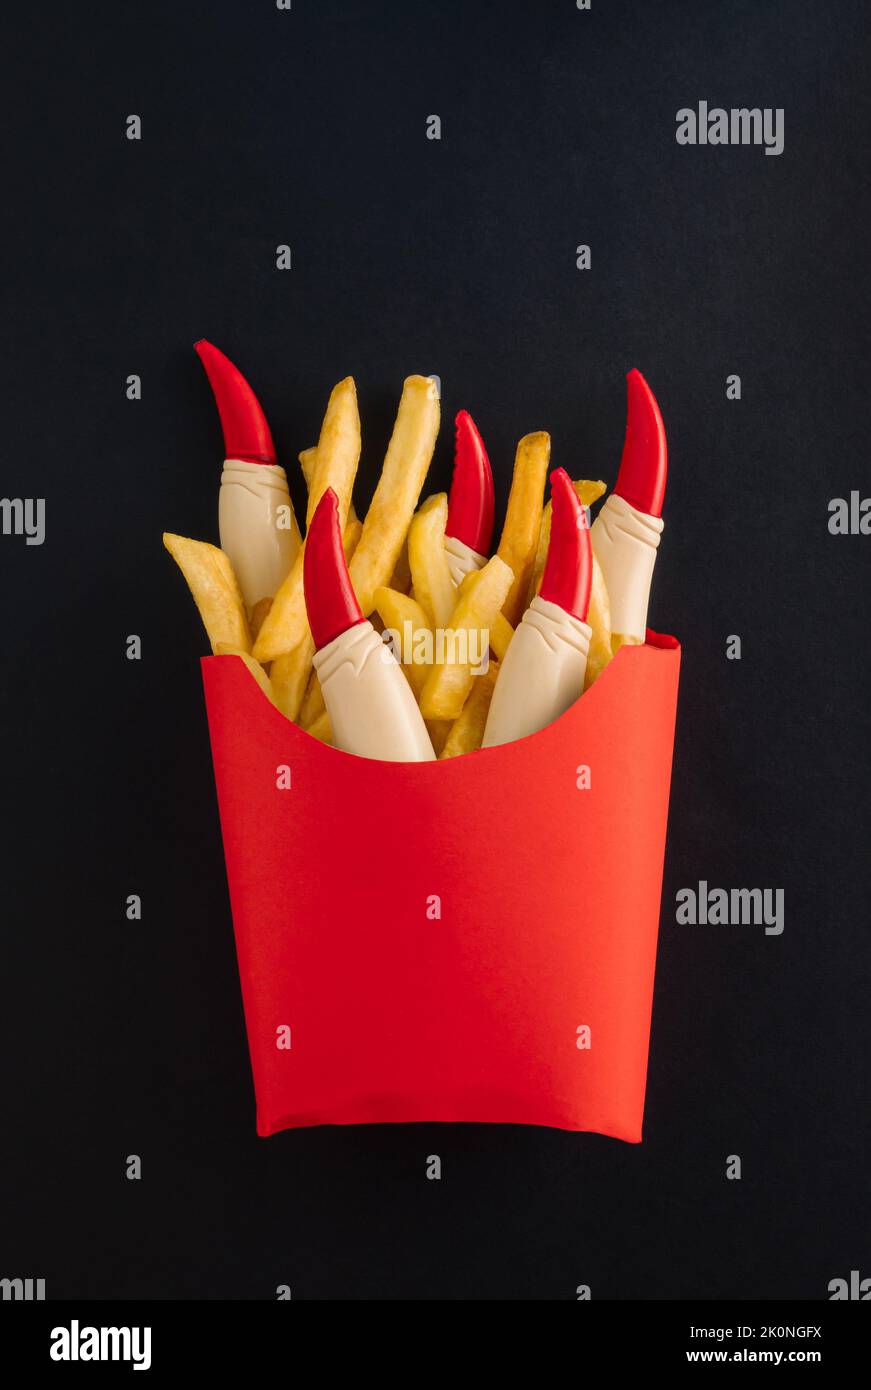 Patatine fritte con ketchup e dita di strega in scatola di carta rossa isolata su fondo nero. Horror concept di Halloween. Idea spaventosa e spoky. Foto Stock